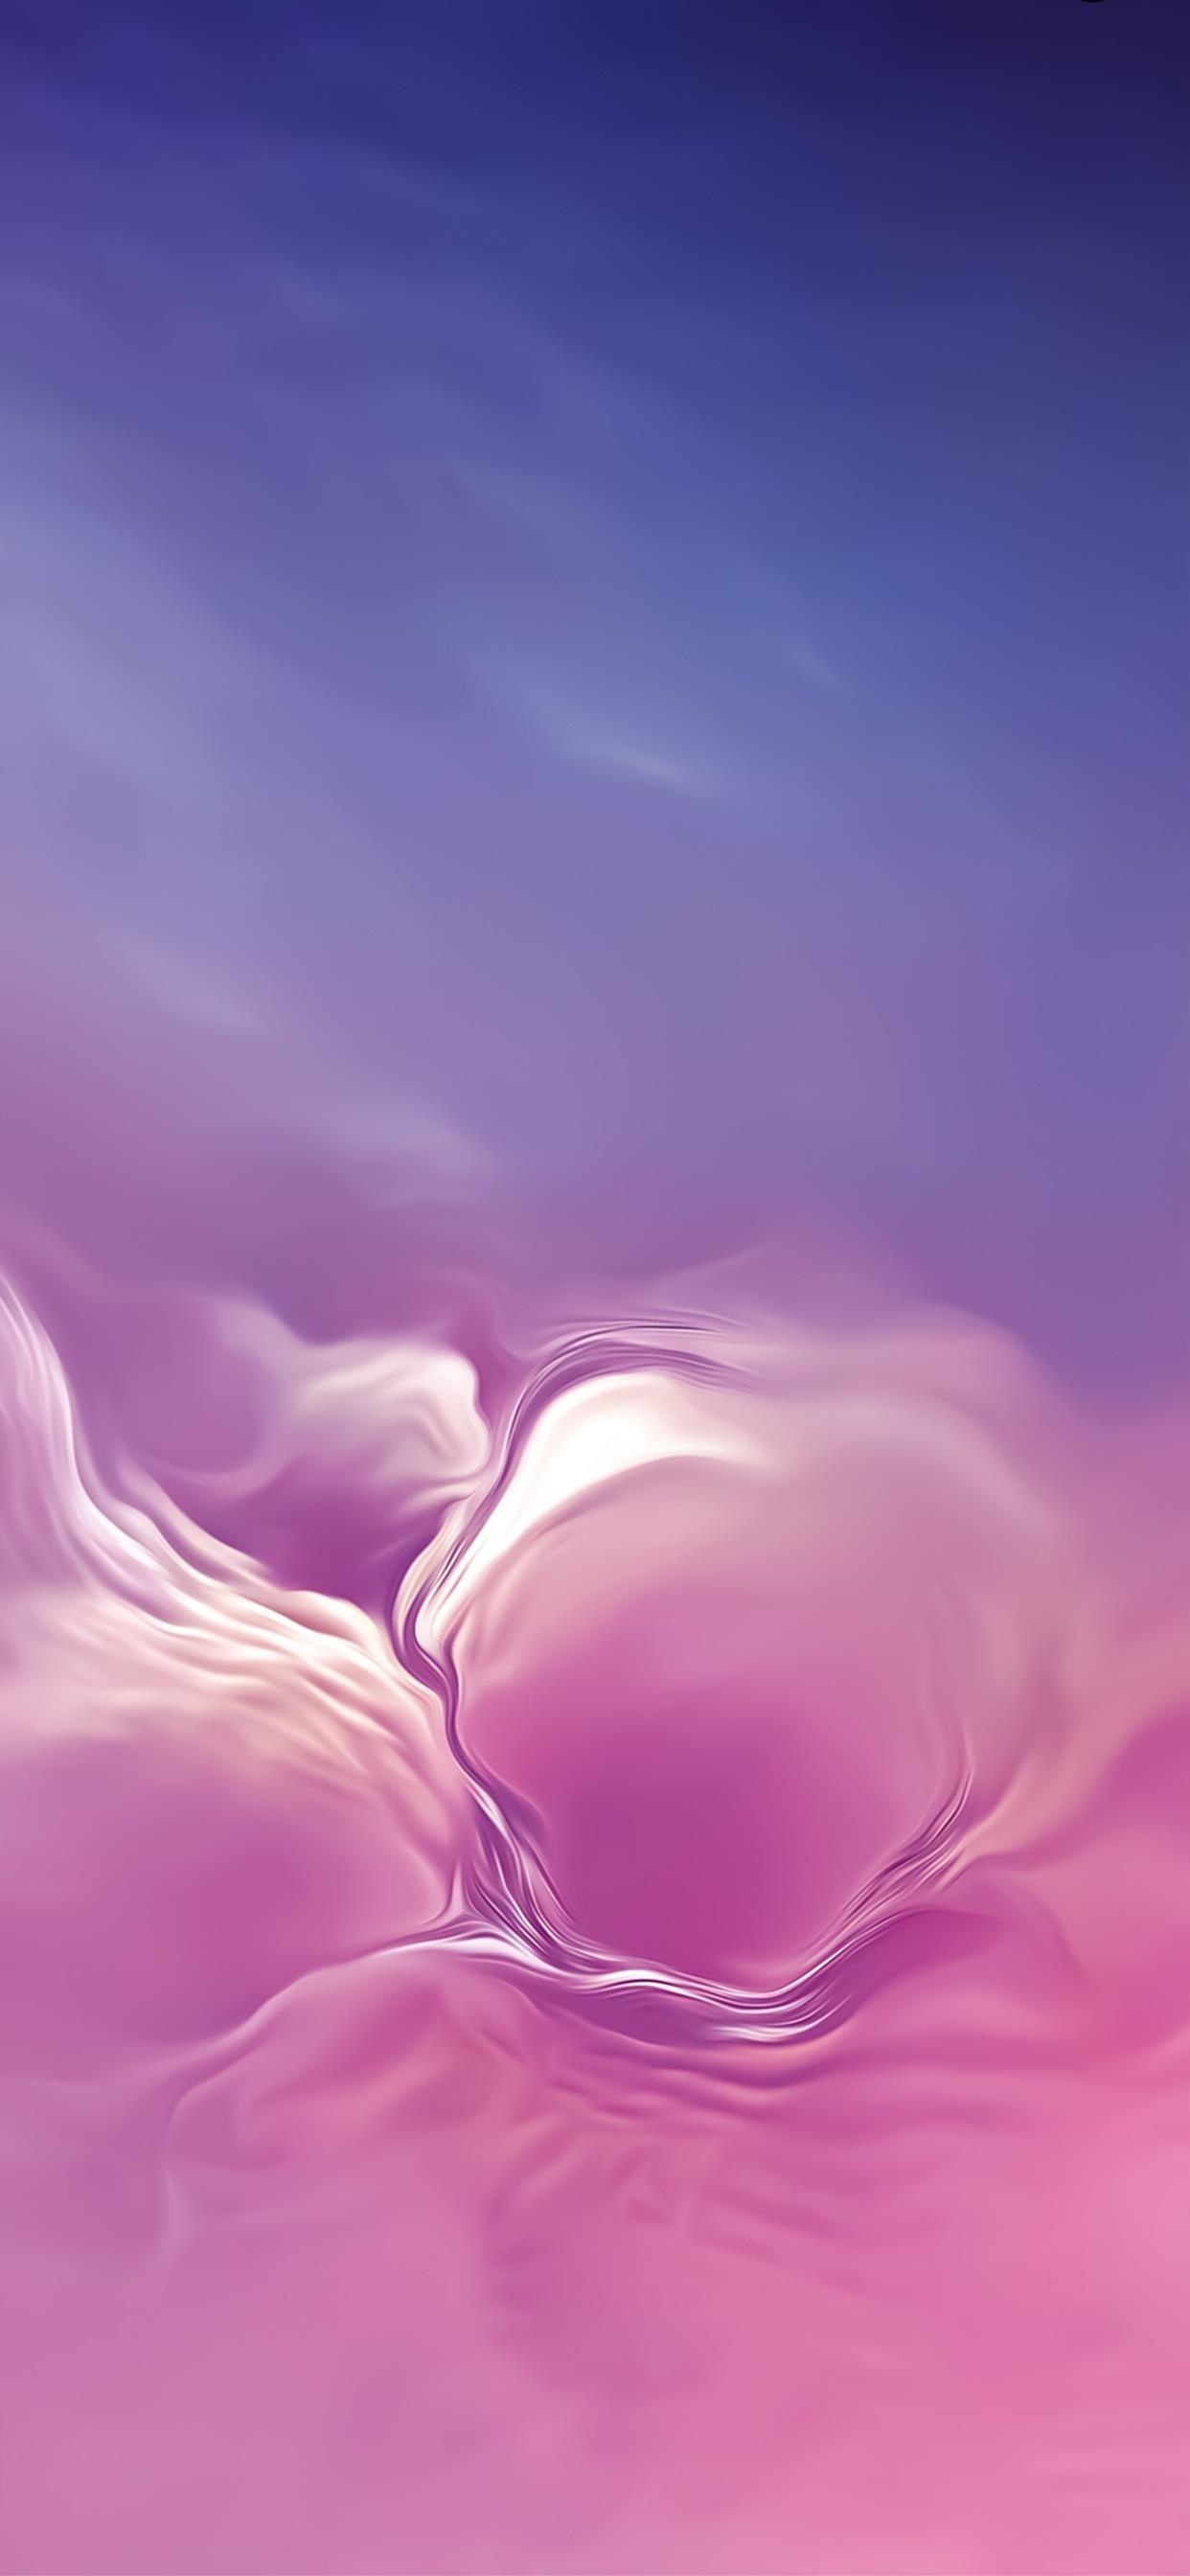 サムスン銀河の壁紙,ピンク,空,紫の,バイオレット,花弁